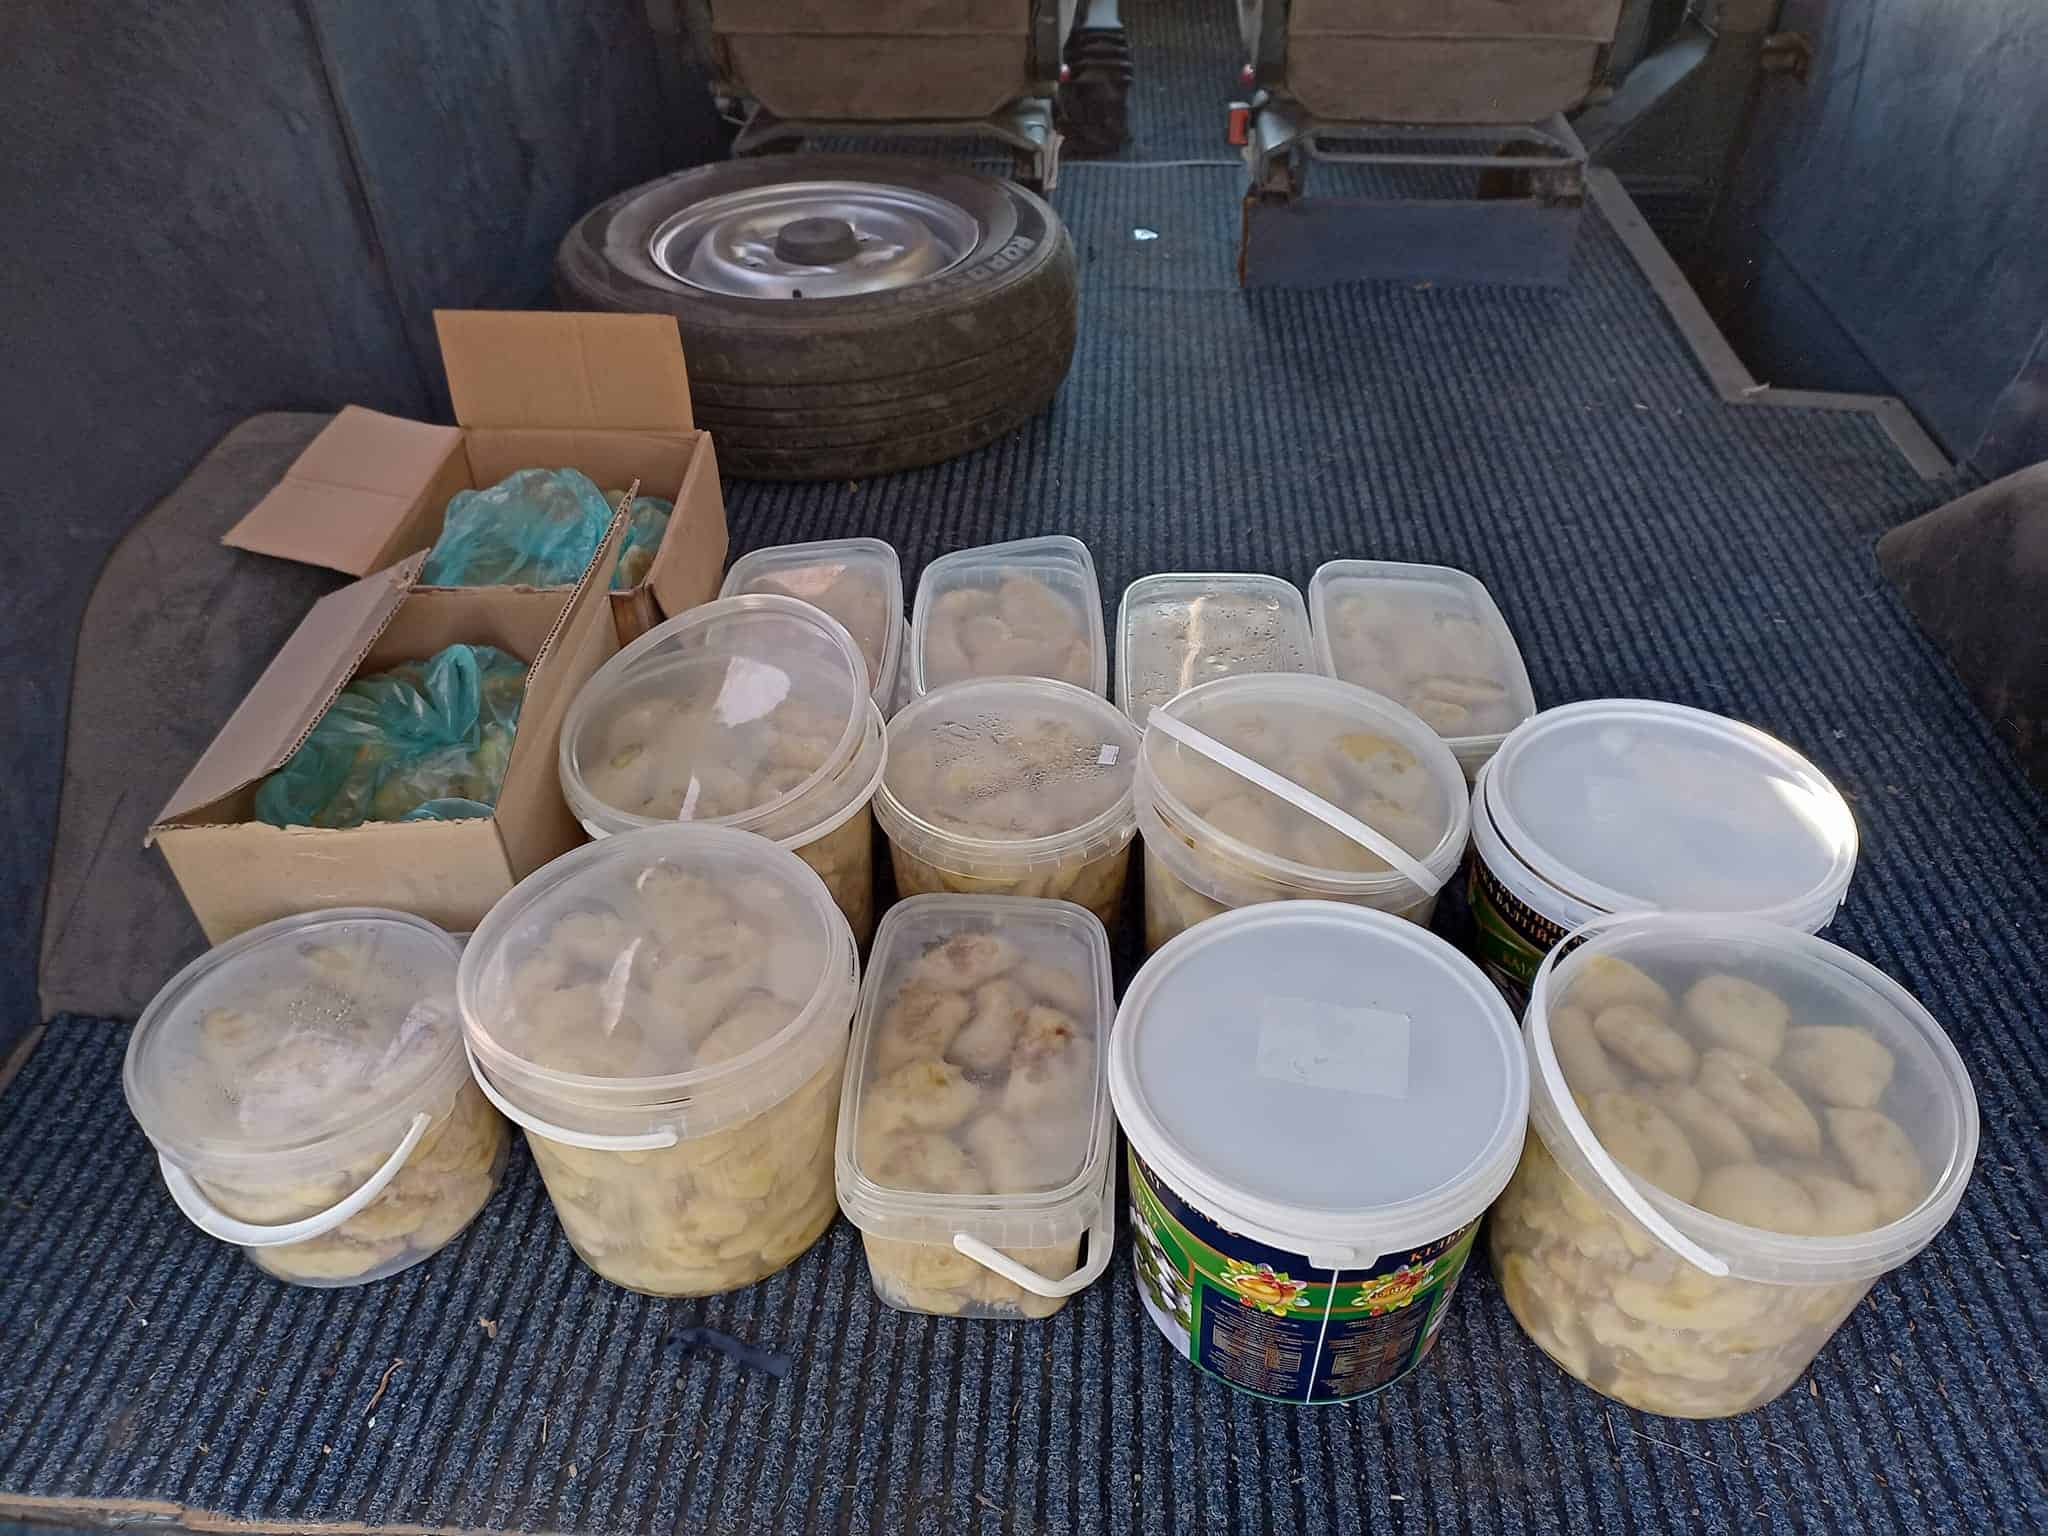 Волонтери з організації «4.5.0. Переяслав» відвідали передові позиції земляків на Бахмутському напрямку: передали плитоноски, шоломи, продукти харчування та інше